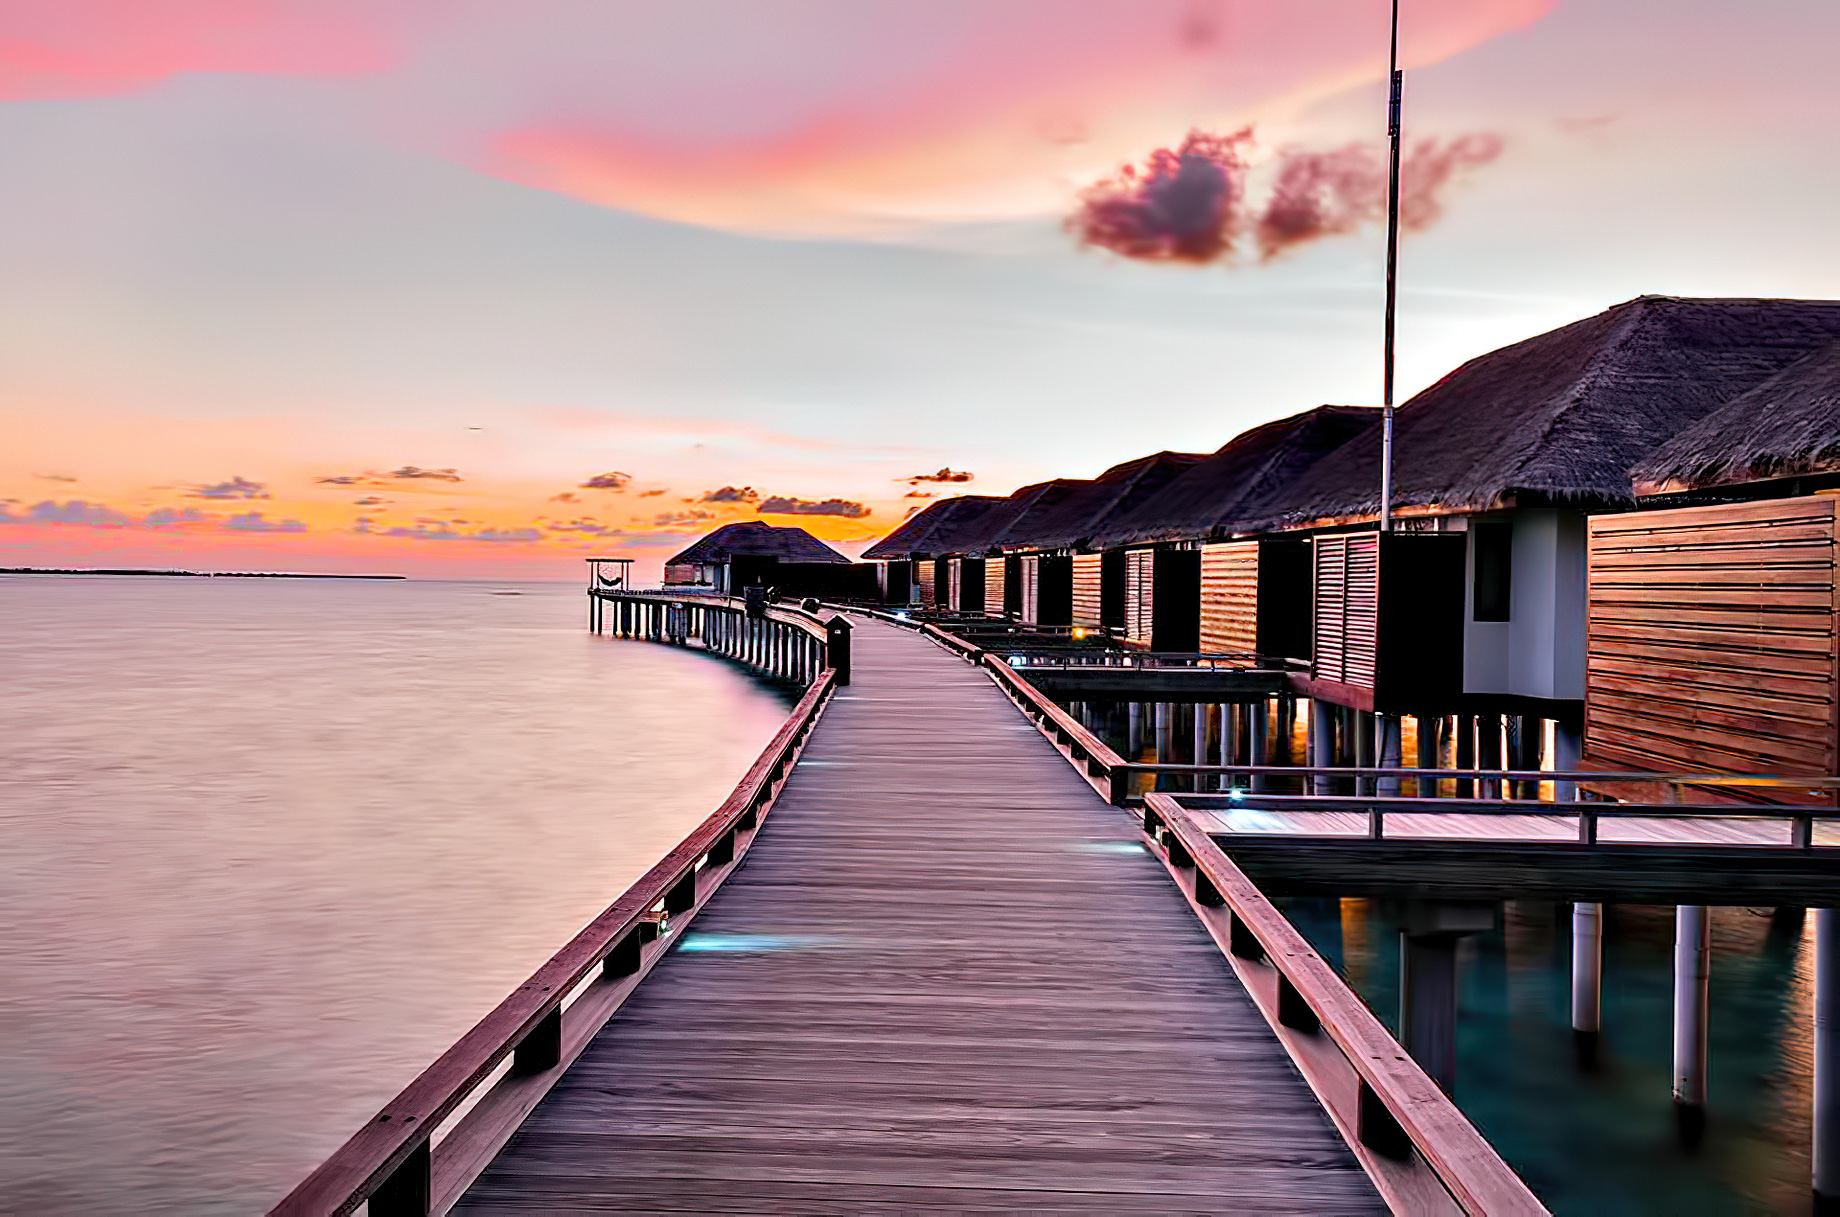 Velassaru Maldives Resort – South Male Atoll, Maldives – Sunset